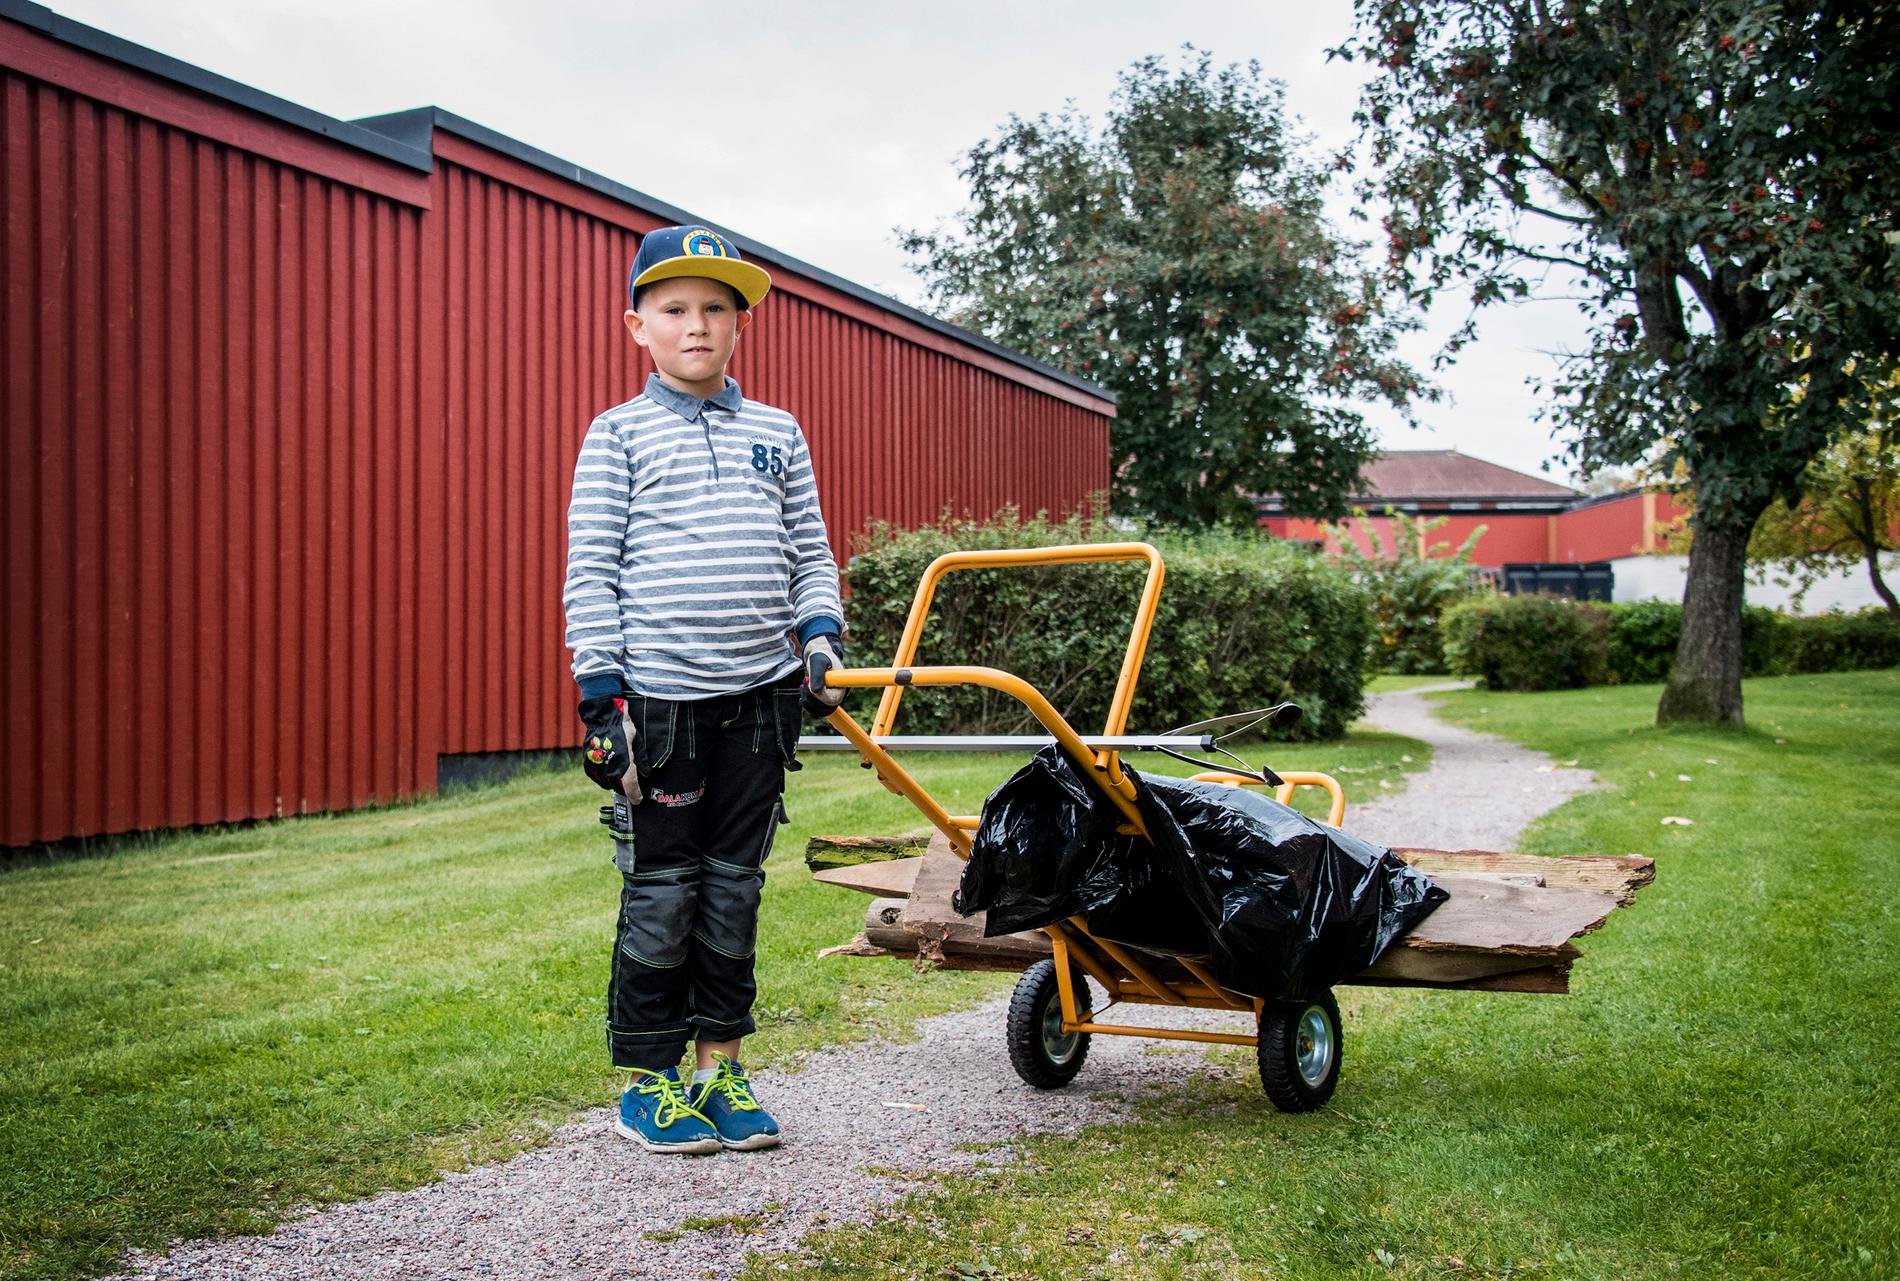 Dagens jobb är klart. I dag blev det en halv sopsäck och gömda träbitar. – Håll Sverige rent! säger Anton uppfordrande.